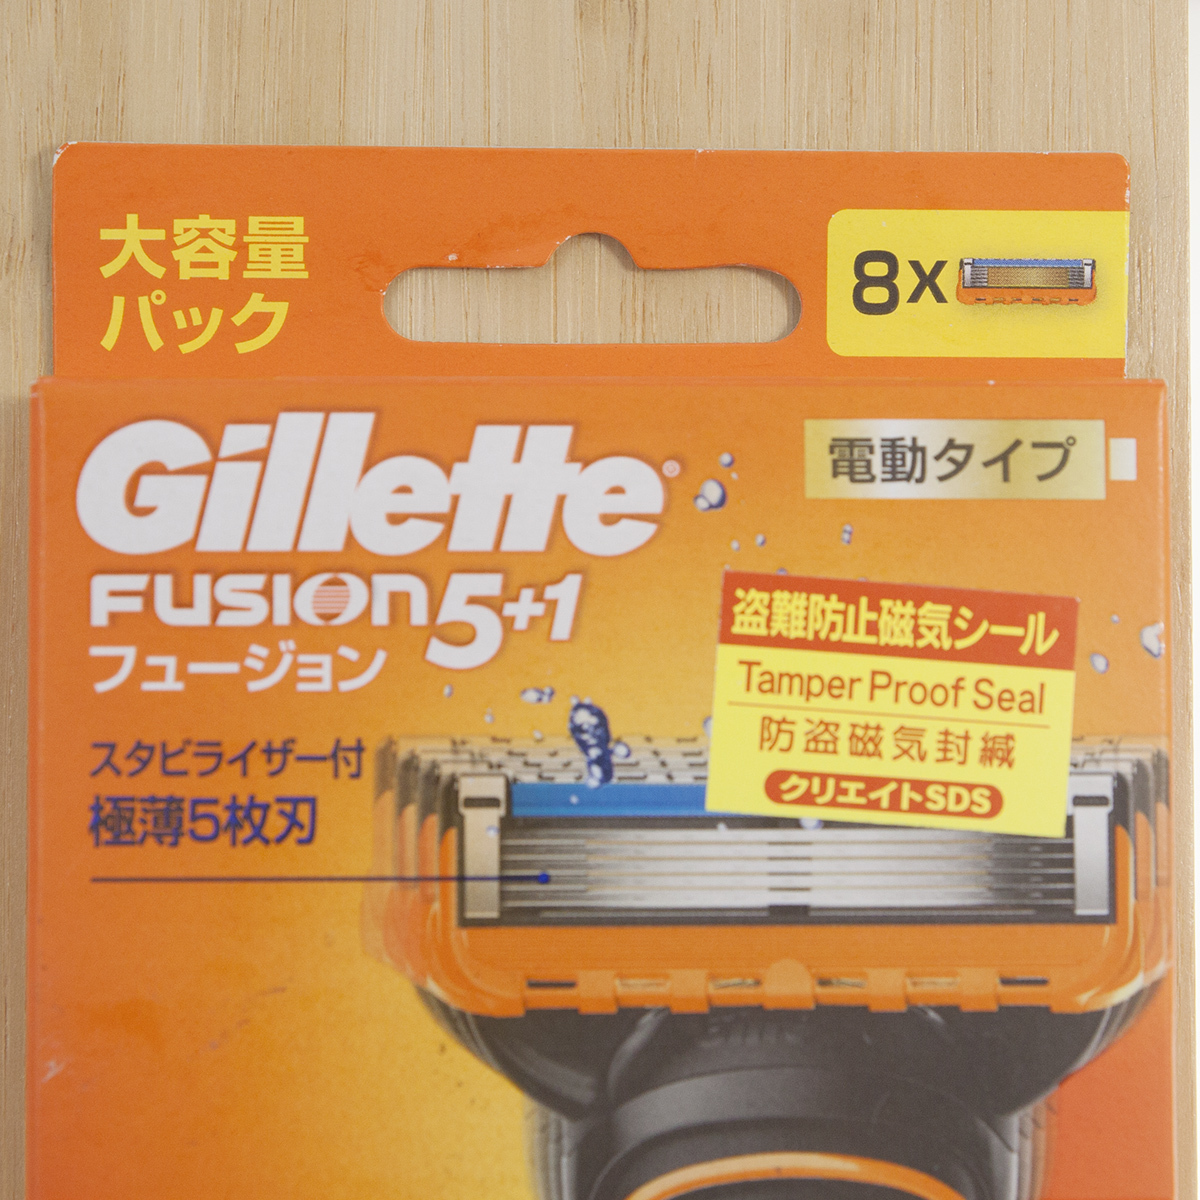 【Gillette】ジレット「Fusion/フュージョン5+1 電動タイプ」替刃8コ入 大容量パック 髭剃り カミソリ【未使用】_画像3